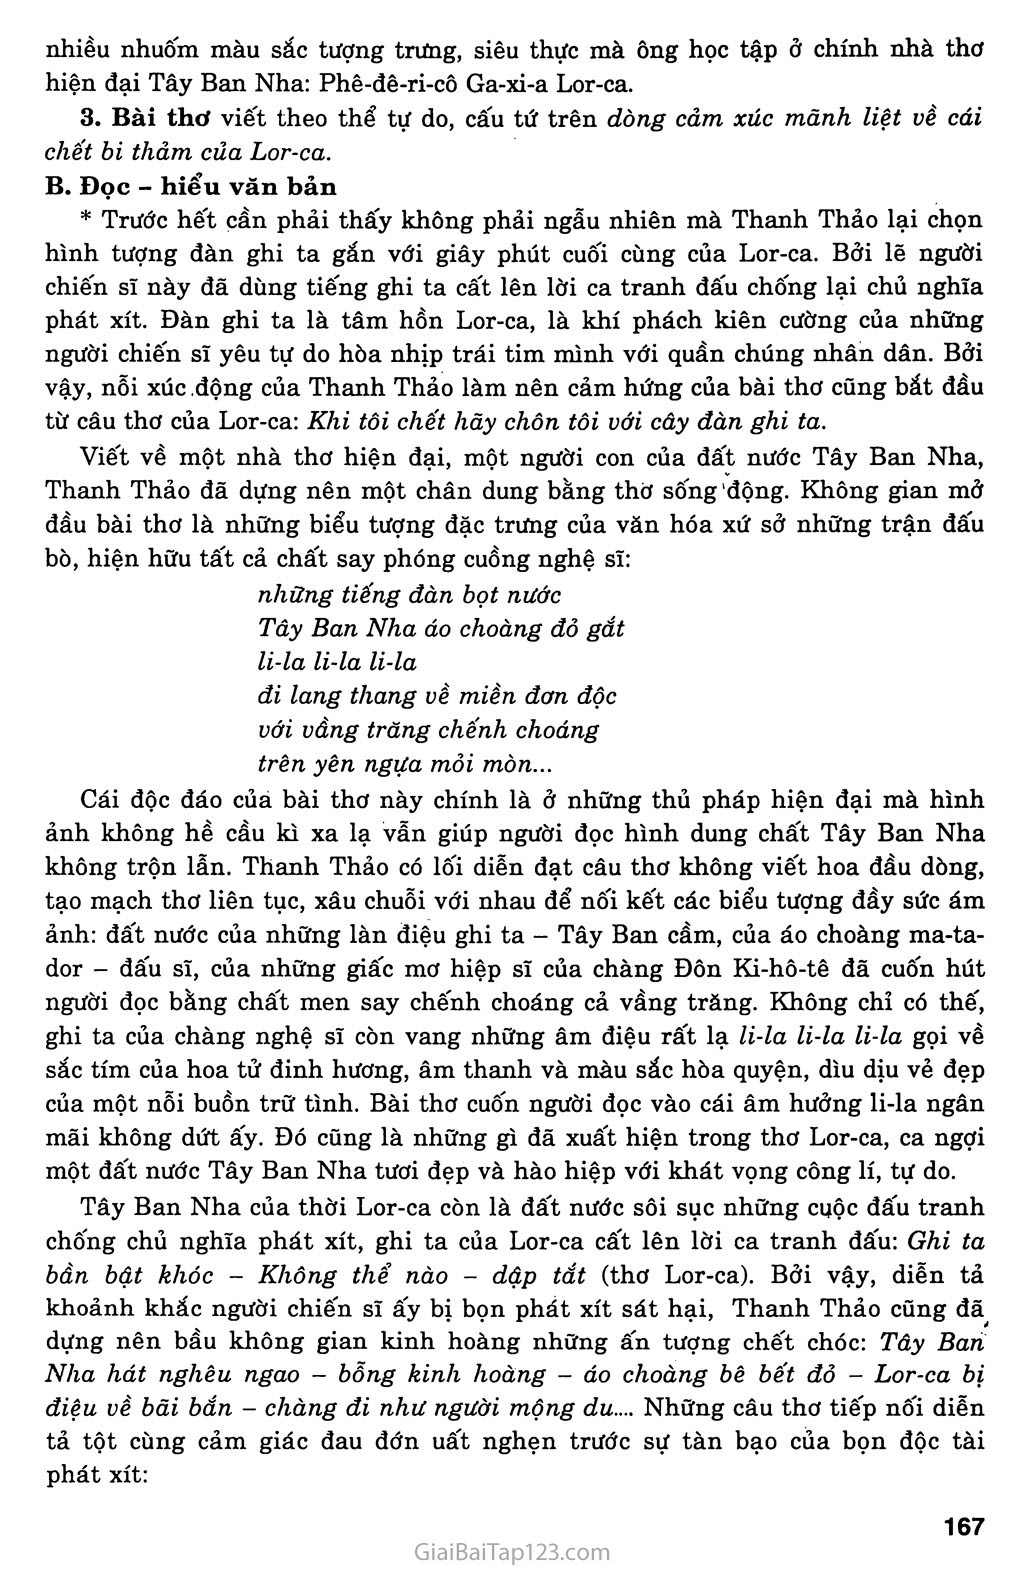 Đàn ghi ta của Lor - Ca (Thanh Thảo, 1985) trang 2